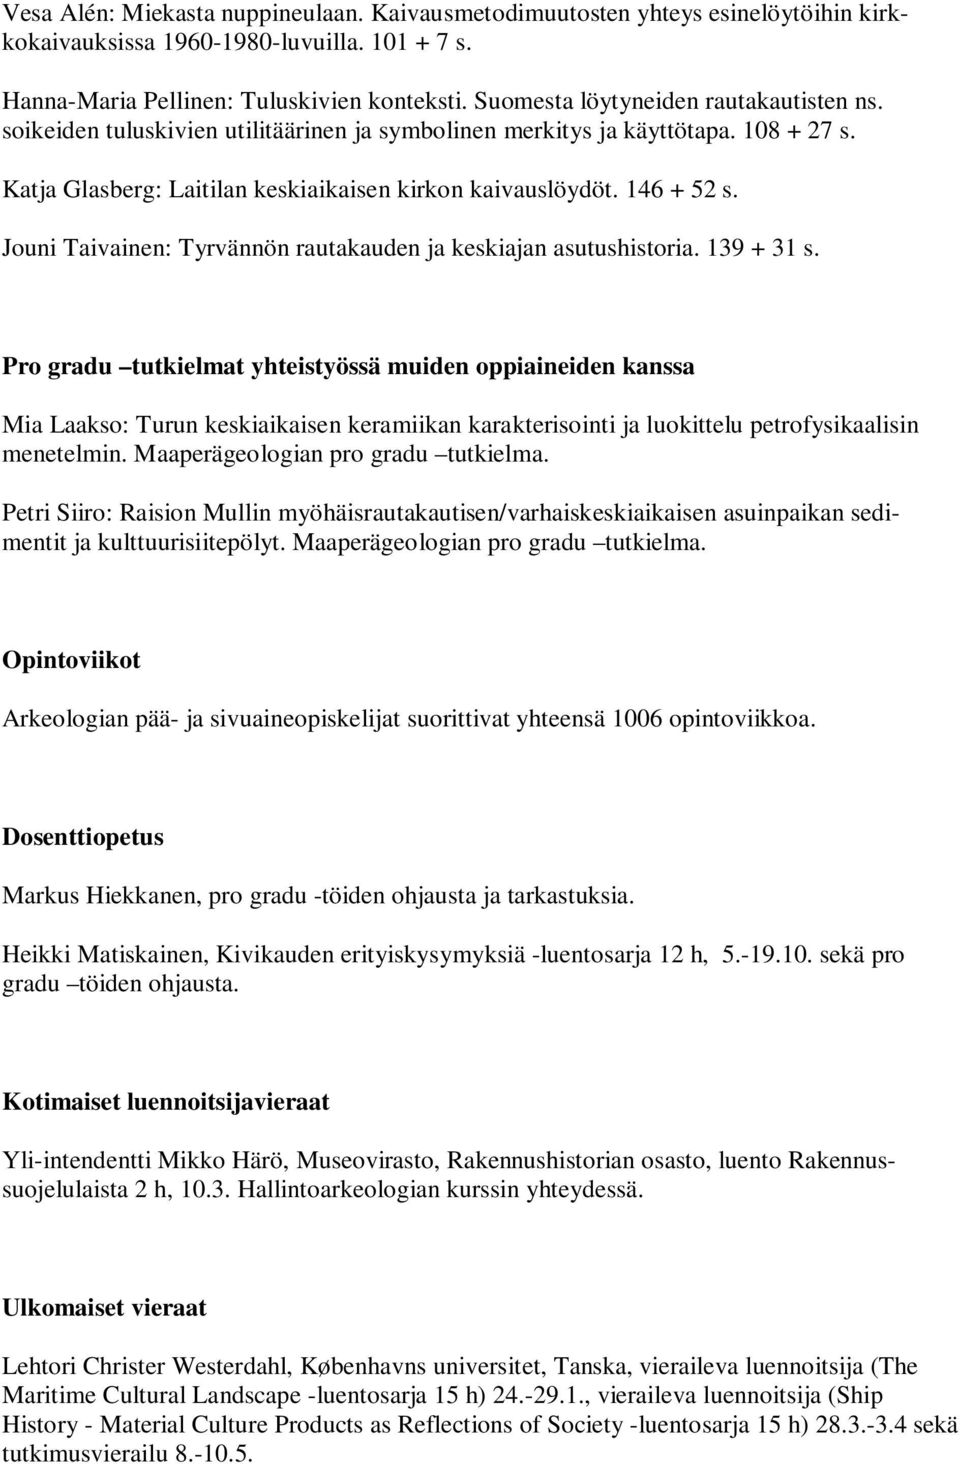 Jouni Taivainen: Tyrvännön rautakauden ja keskiajan asutushistoria. 139 + 31 s.